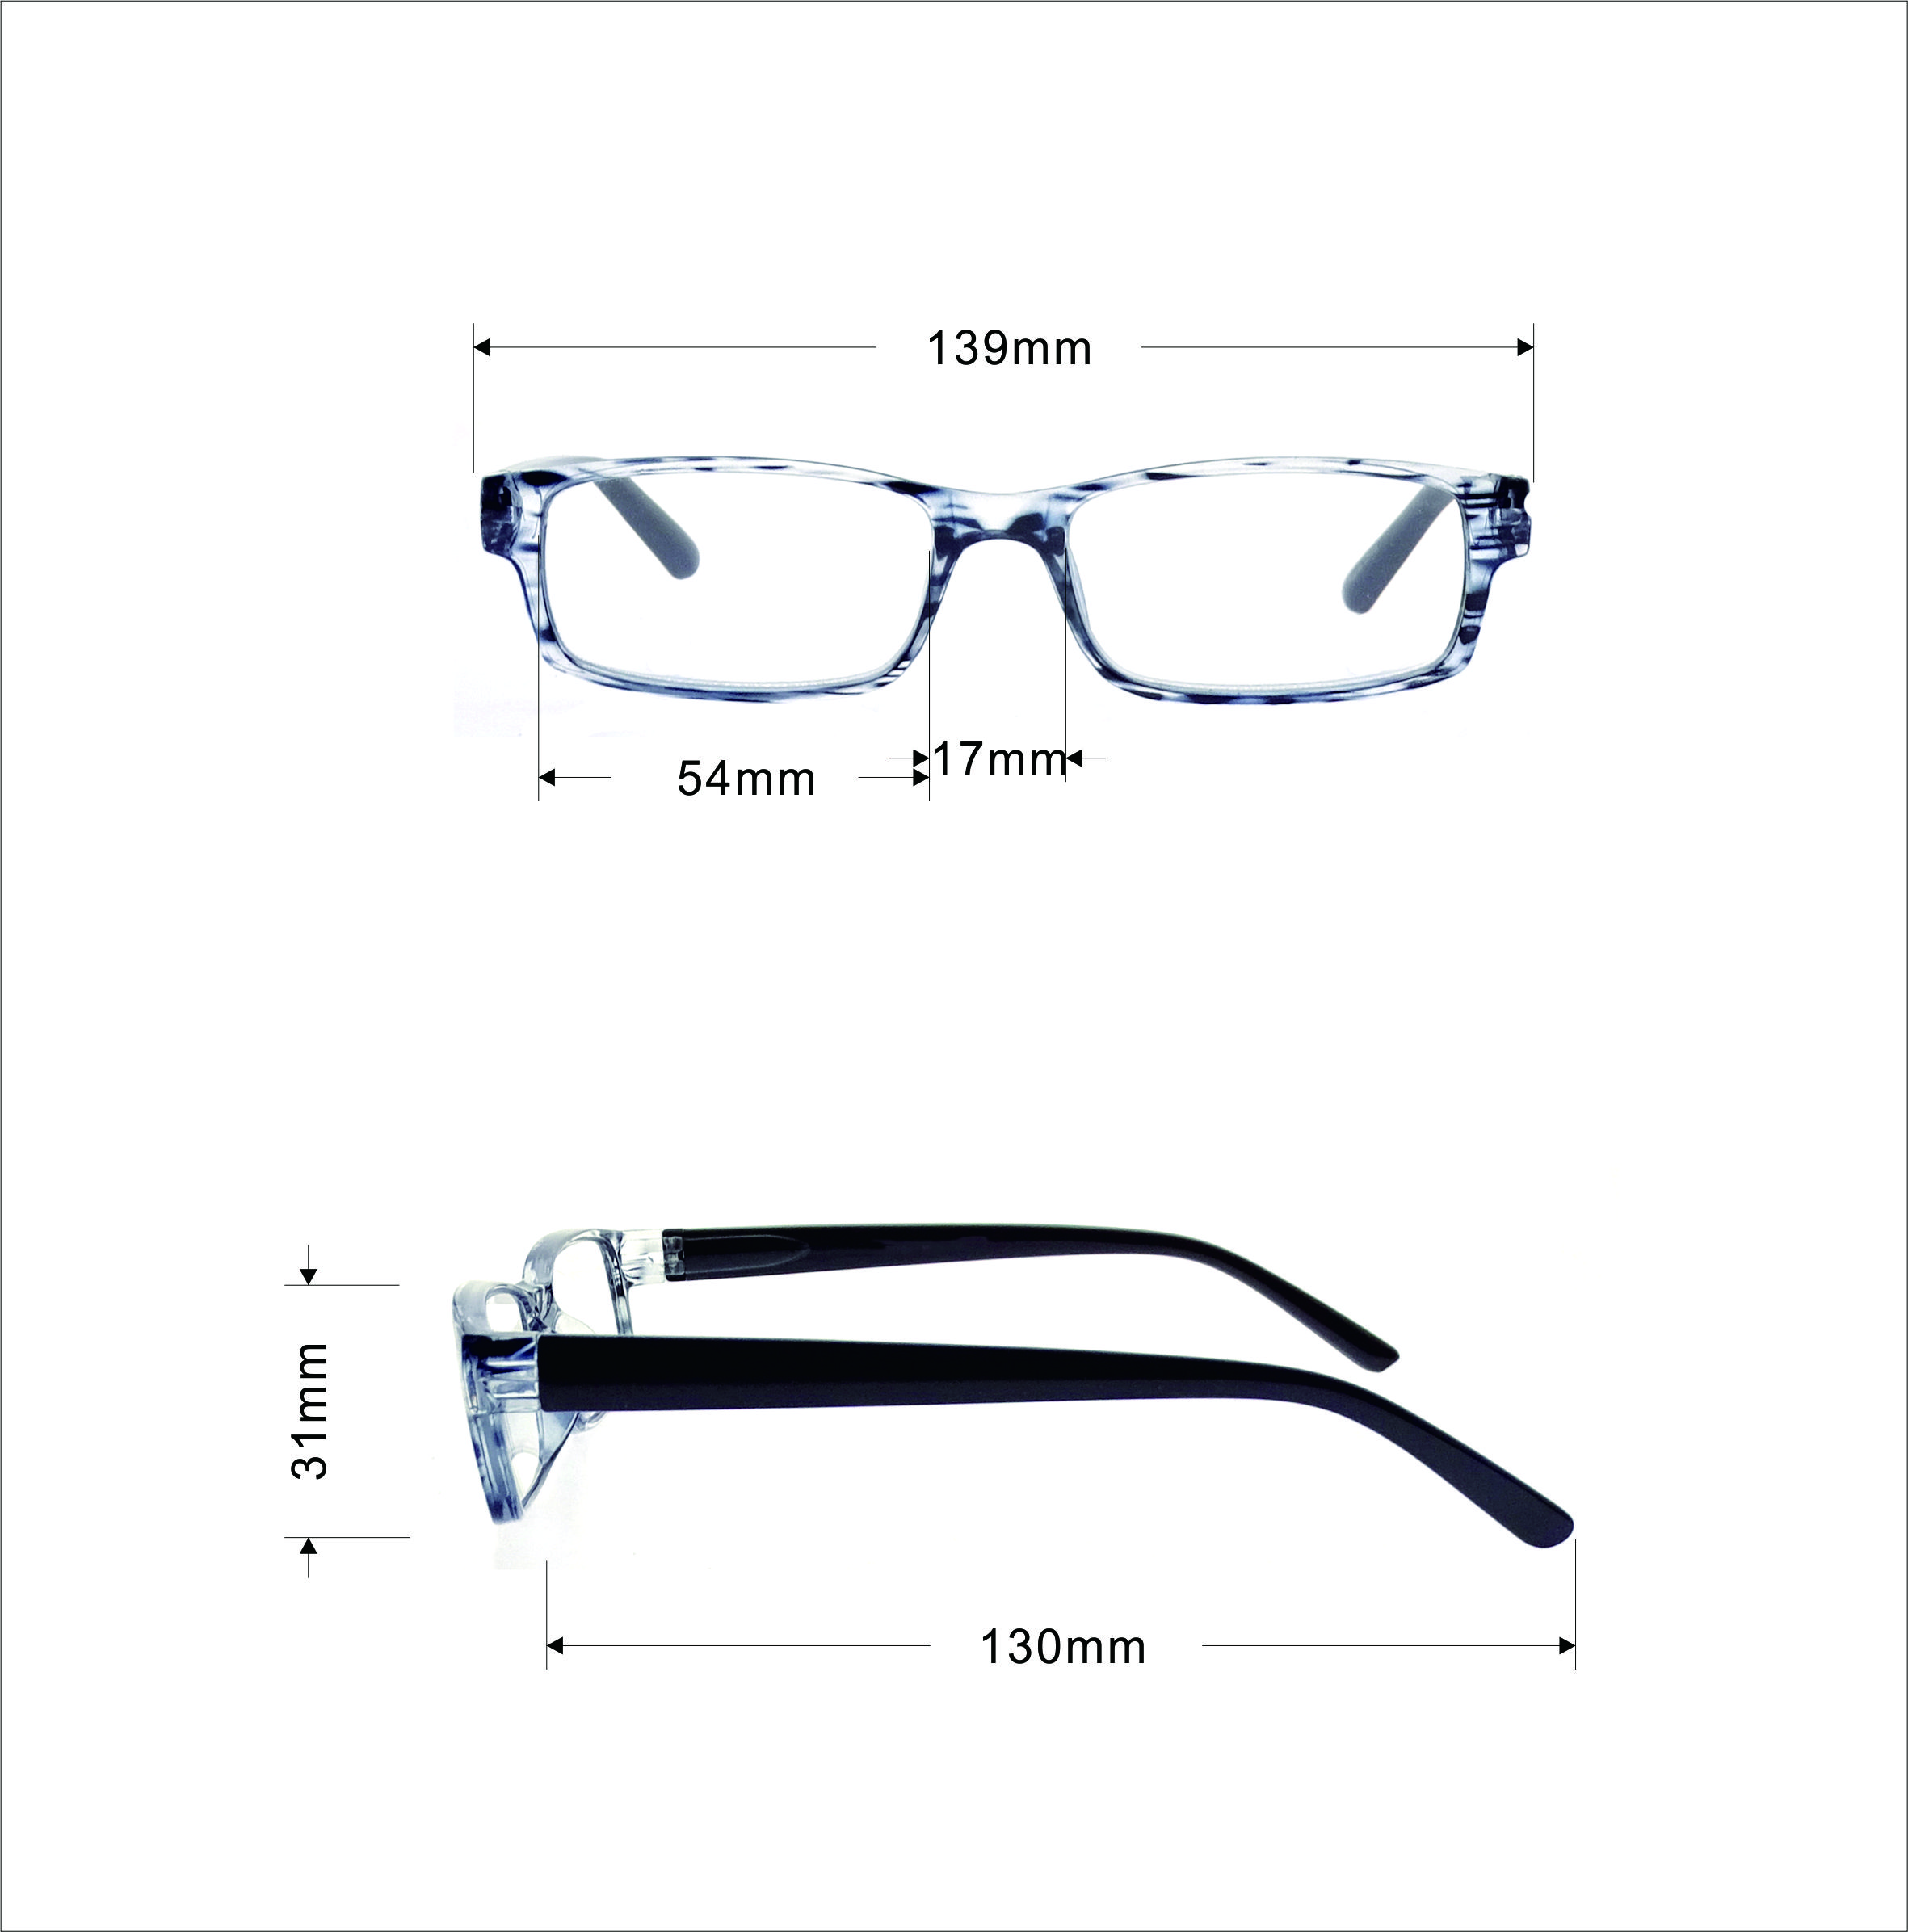  Stripe Designers Glasses Frames for Women Trends LR-P6382